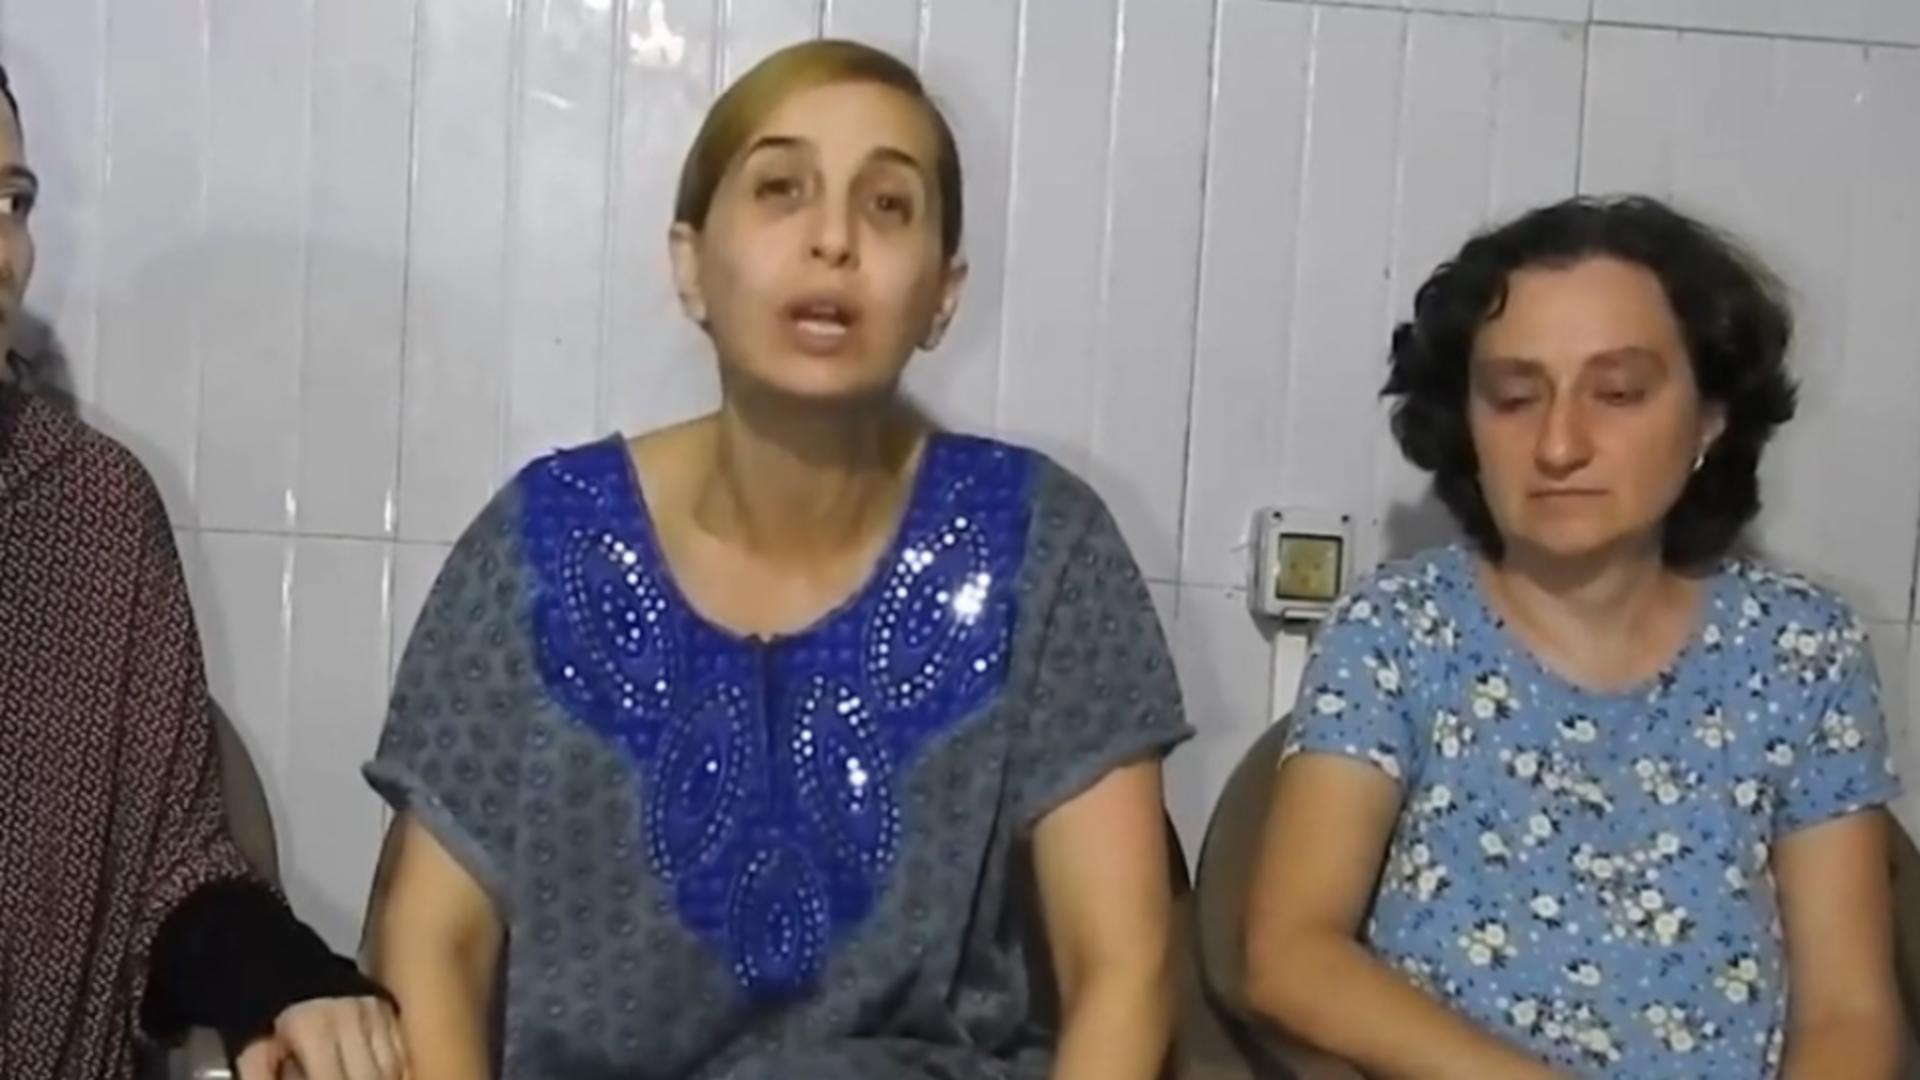 Război Israel-Gaza: Reacția familiei femeii de origine română ținută ostatică de Hamas, după mesajul video